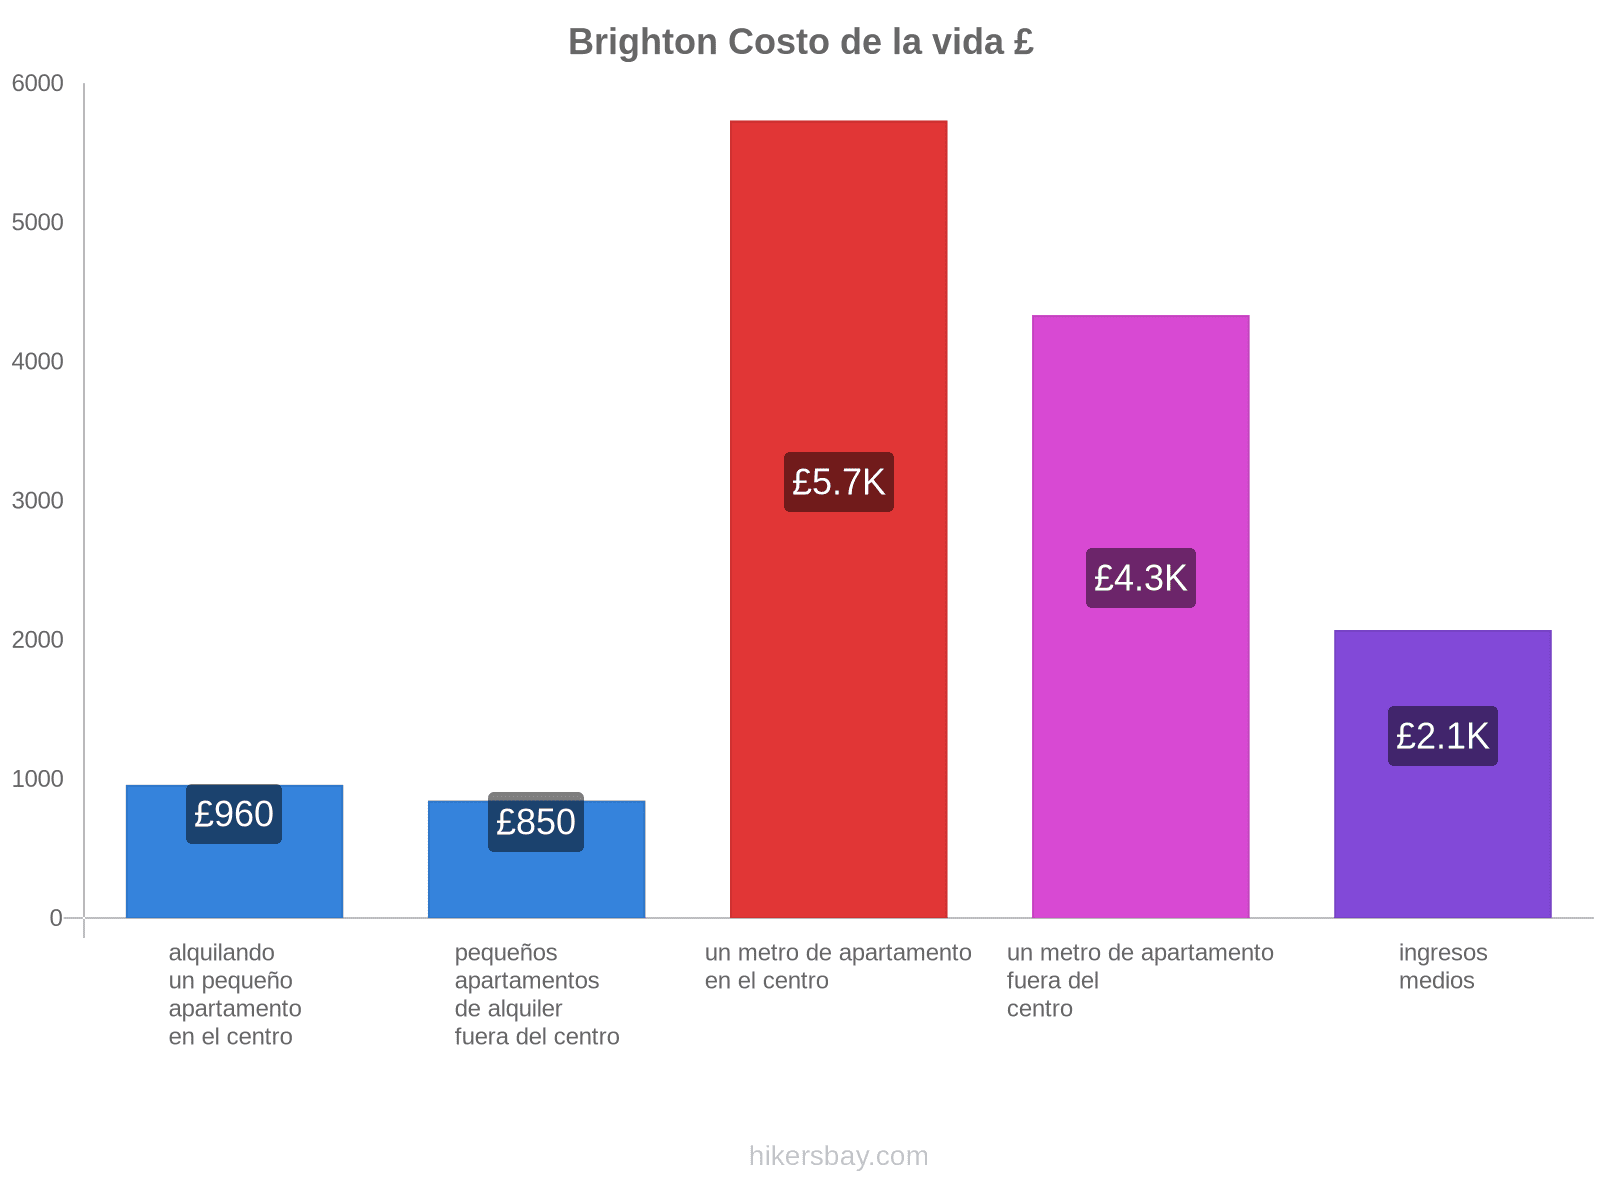 Brighton costo de la vida hikersbay.com